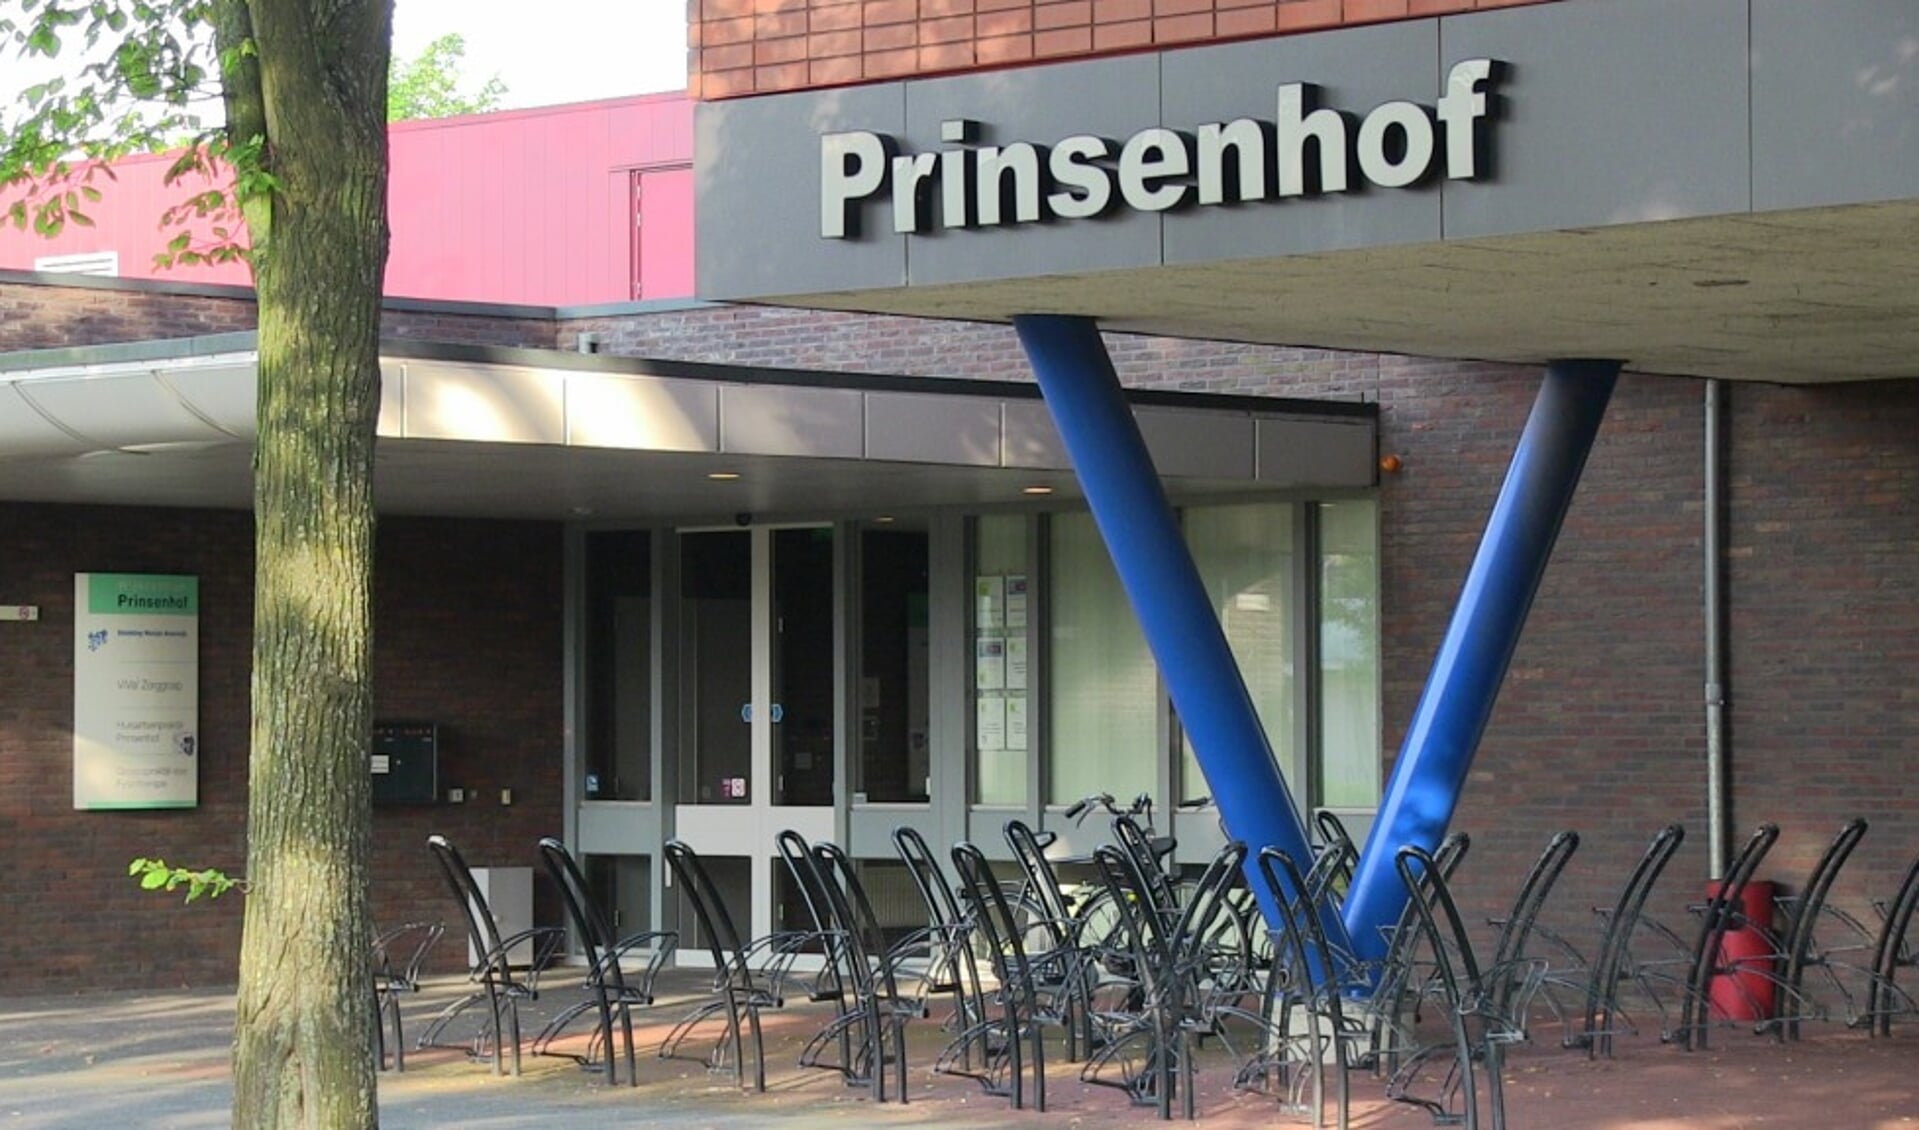 De locatie van Filmclub IJmond is in de Prinsenhof in Beverwijk.